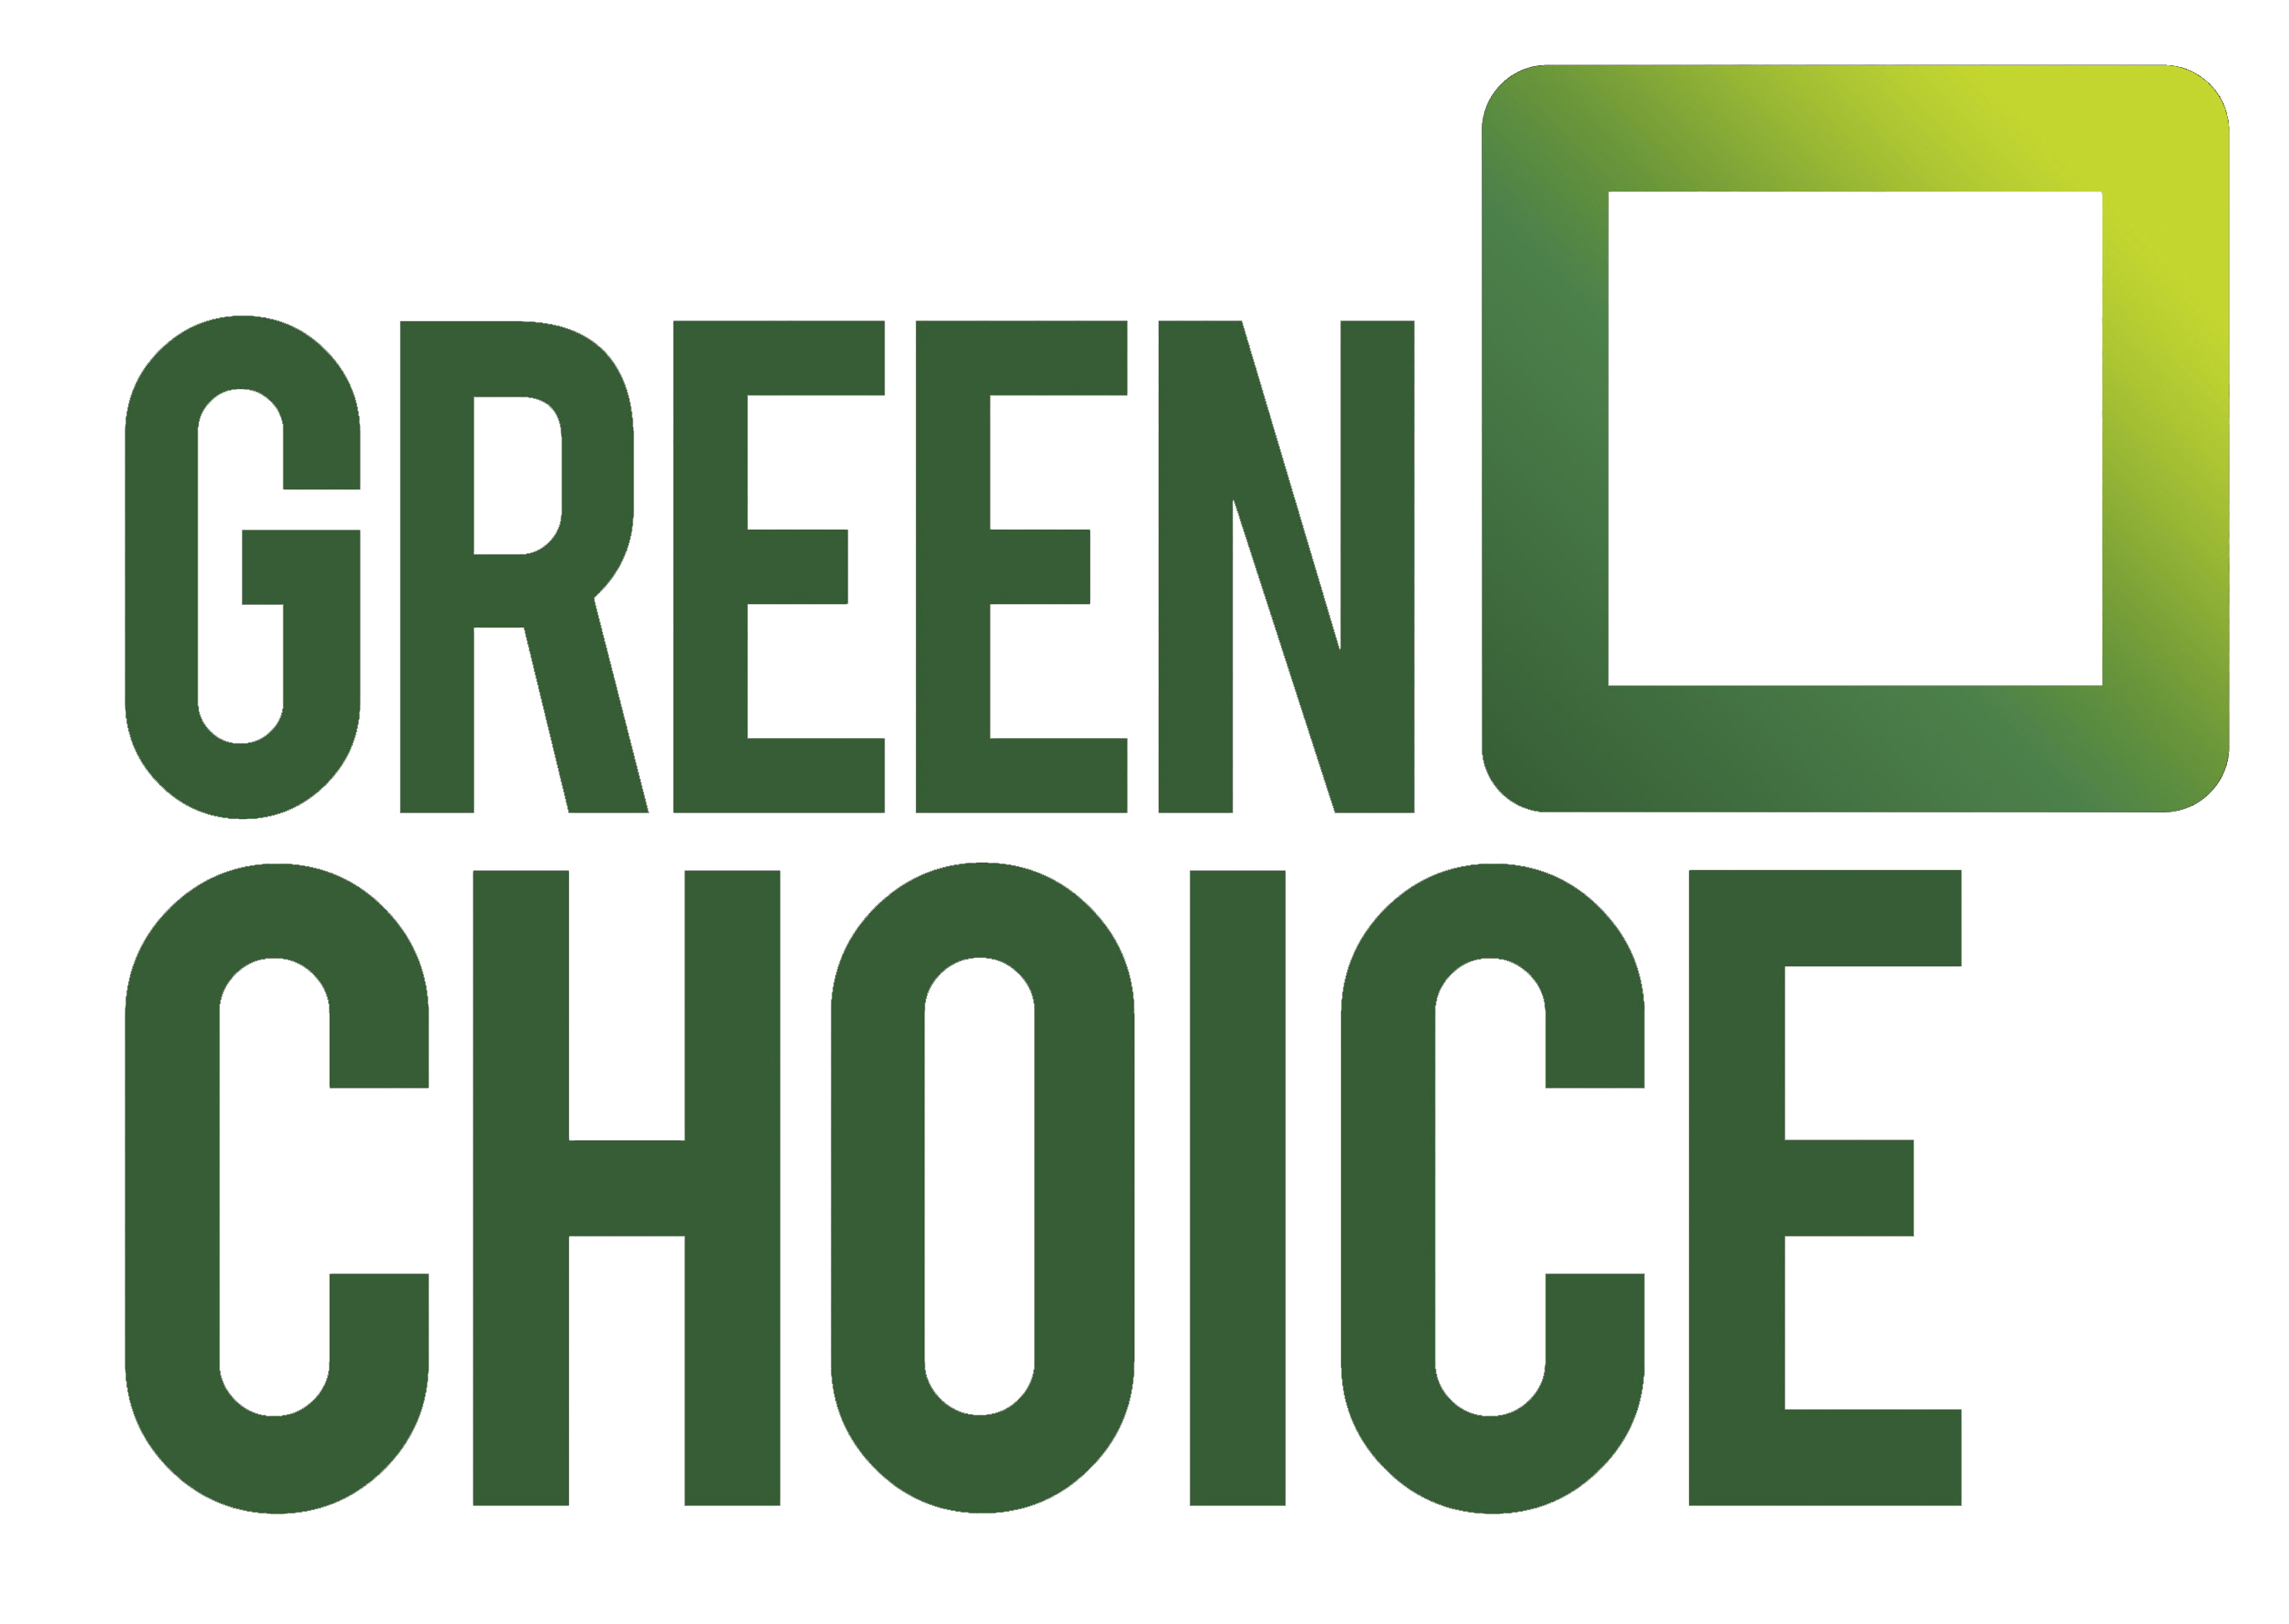 Onze partner Greenchoice ‘Beste uit de test’ volgens de Consumentenbond